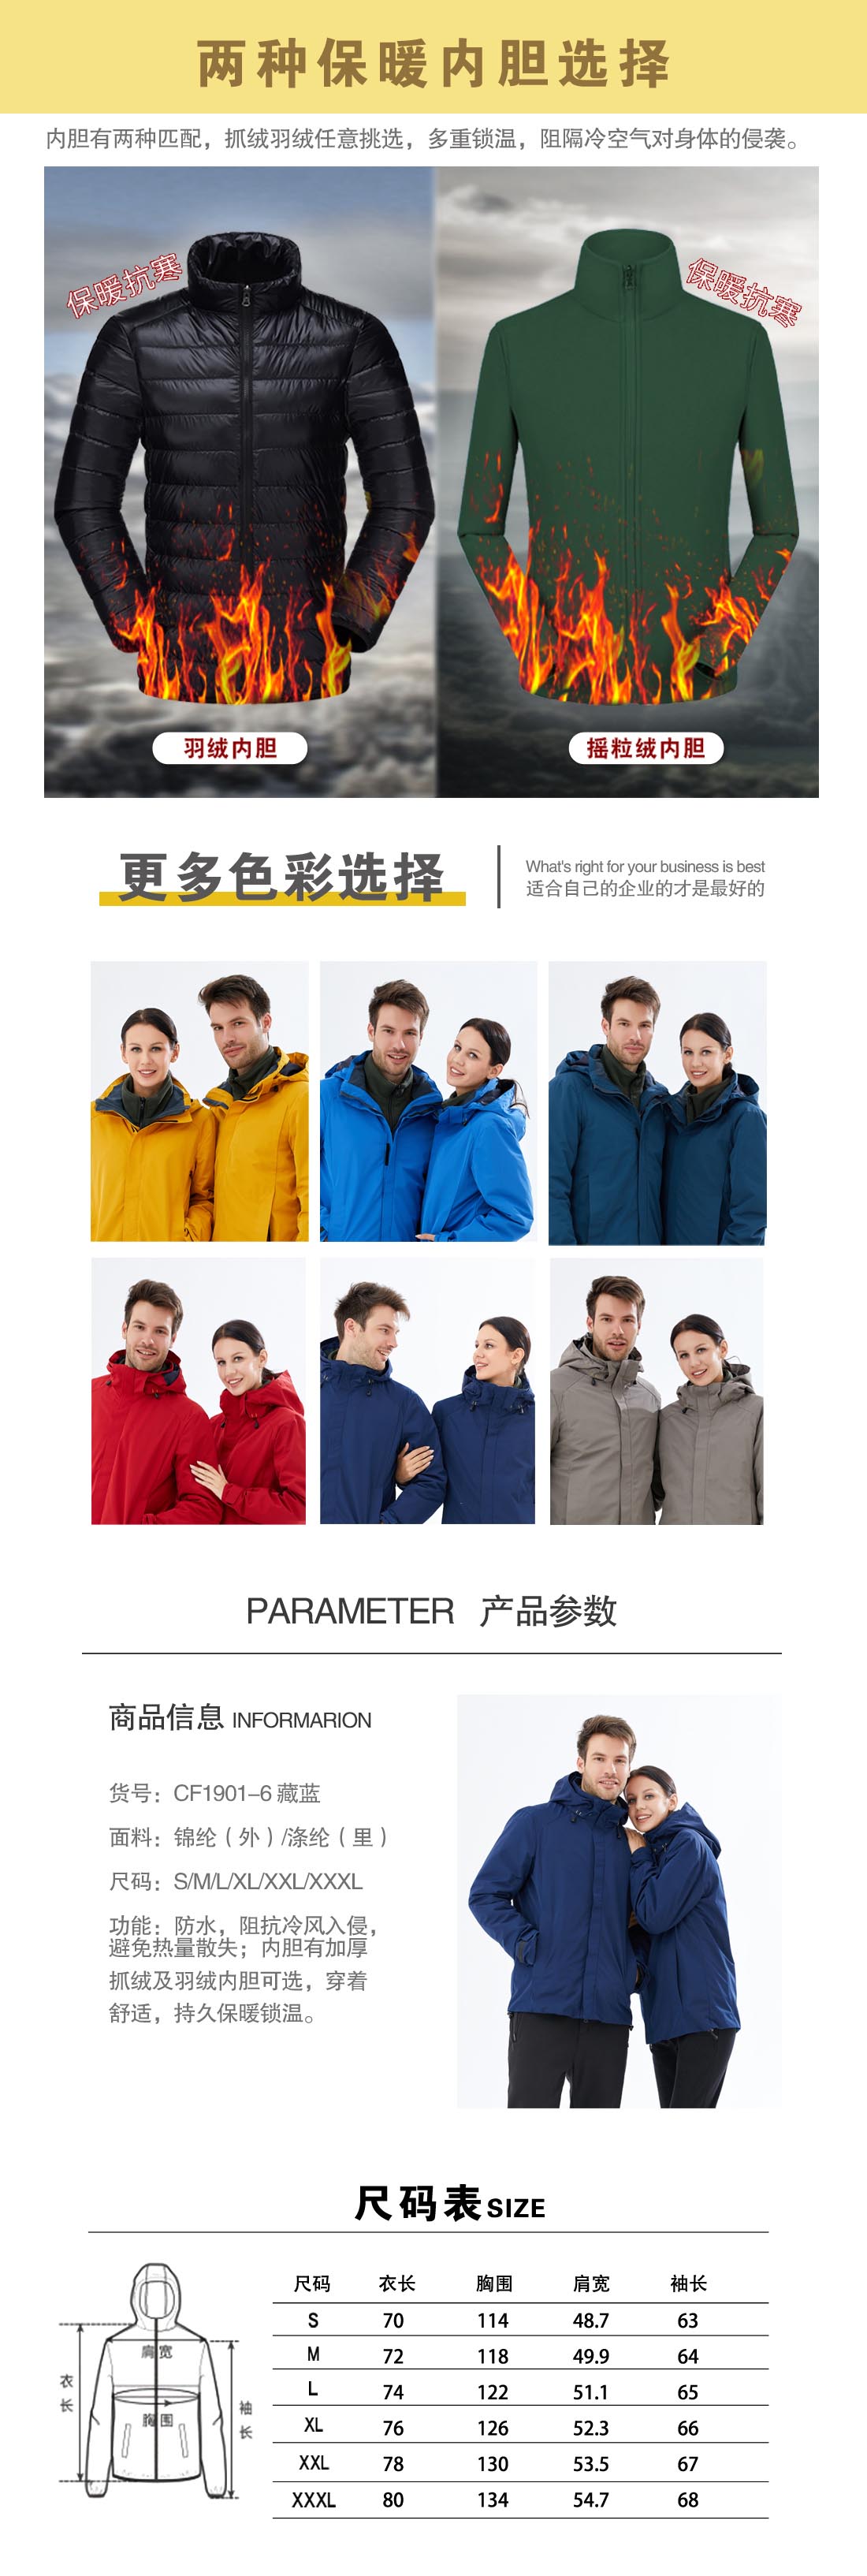 藏藍色沖鋒衣CF1901-6(圖3)